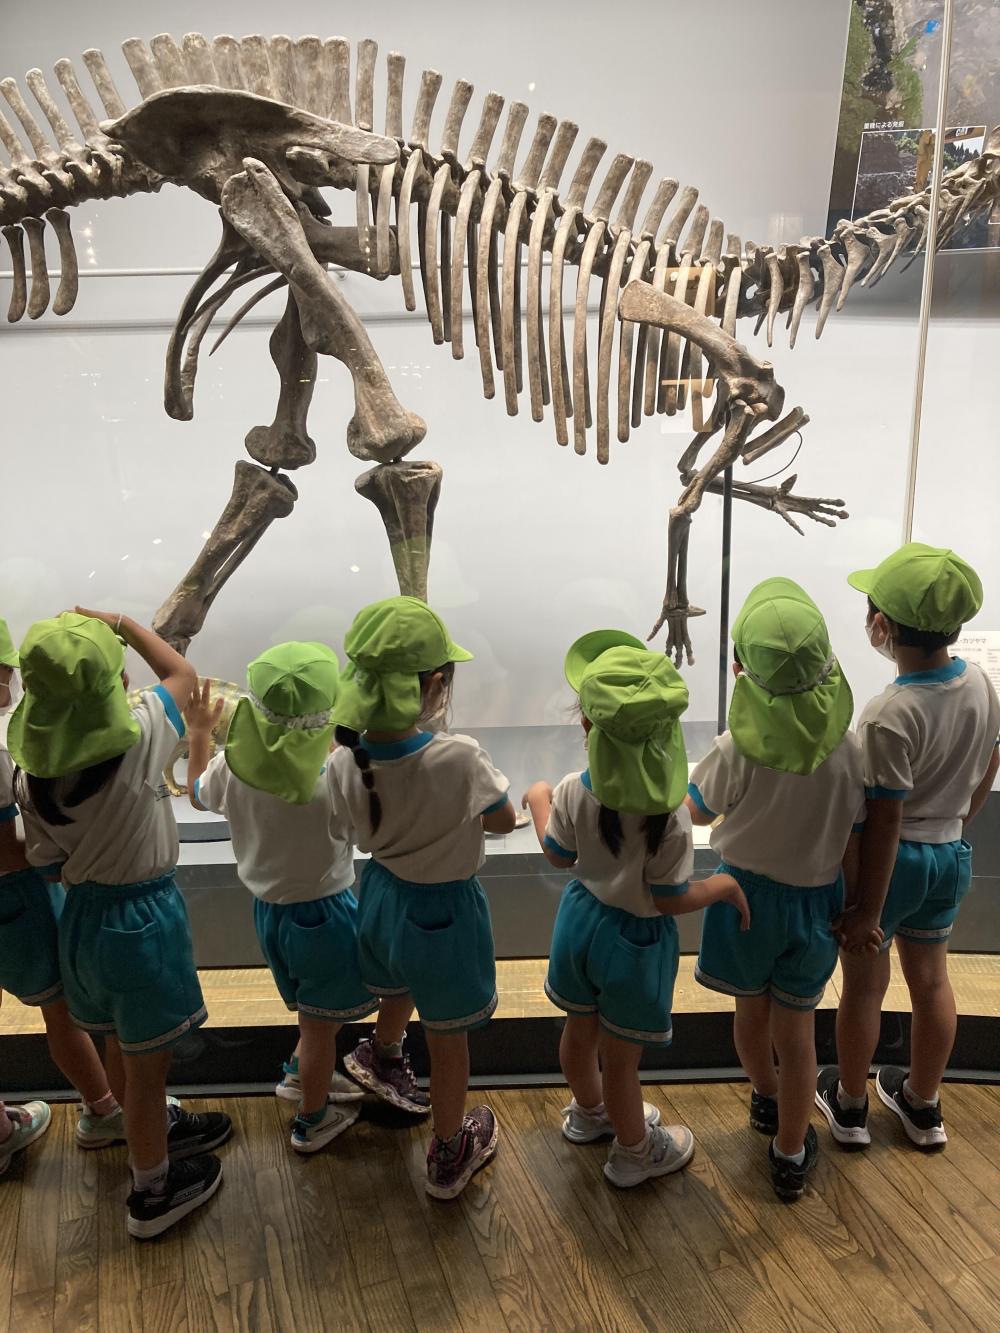 リニューアルした恐竜博物館には、迫力の恐竜がかっこよかったよ♪